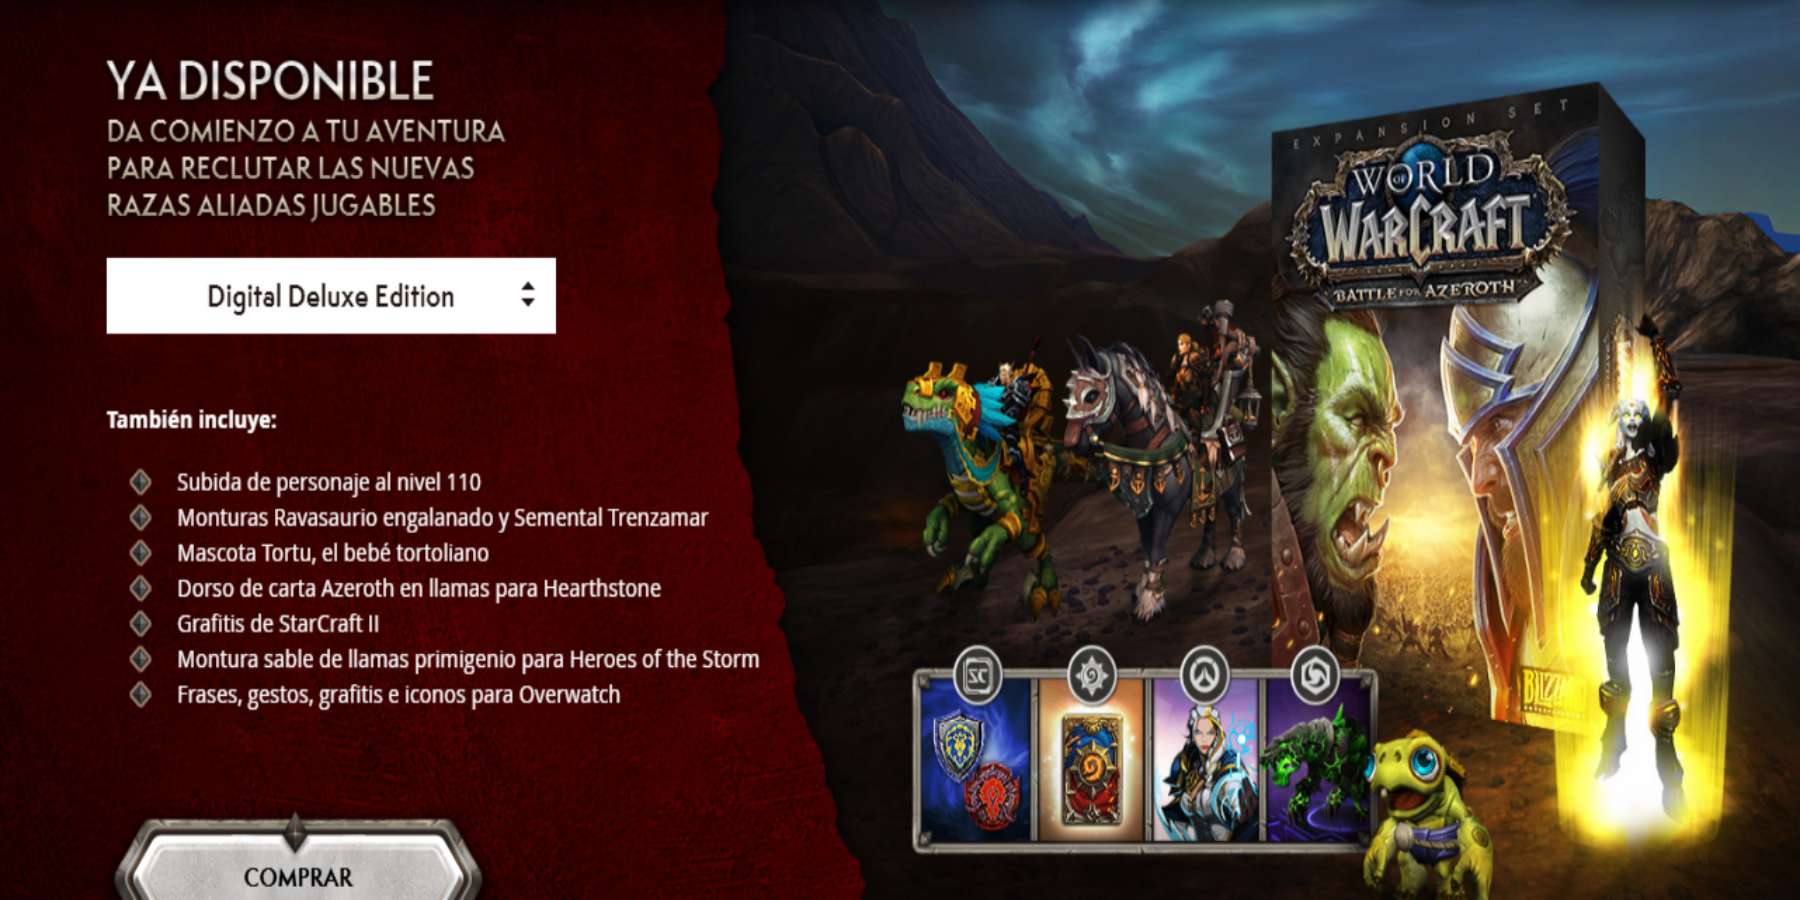 Battle for Azeroth es la expansión de World of Warcraft